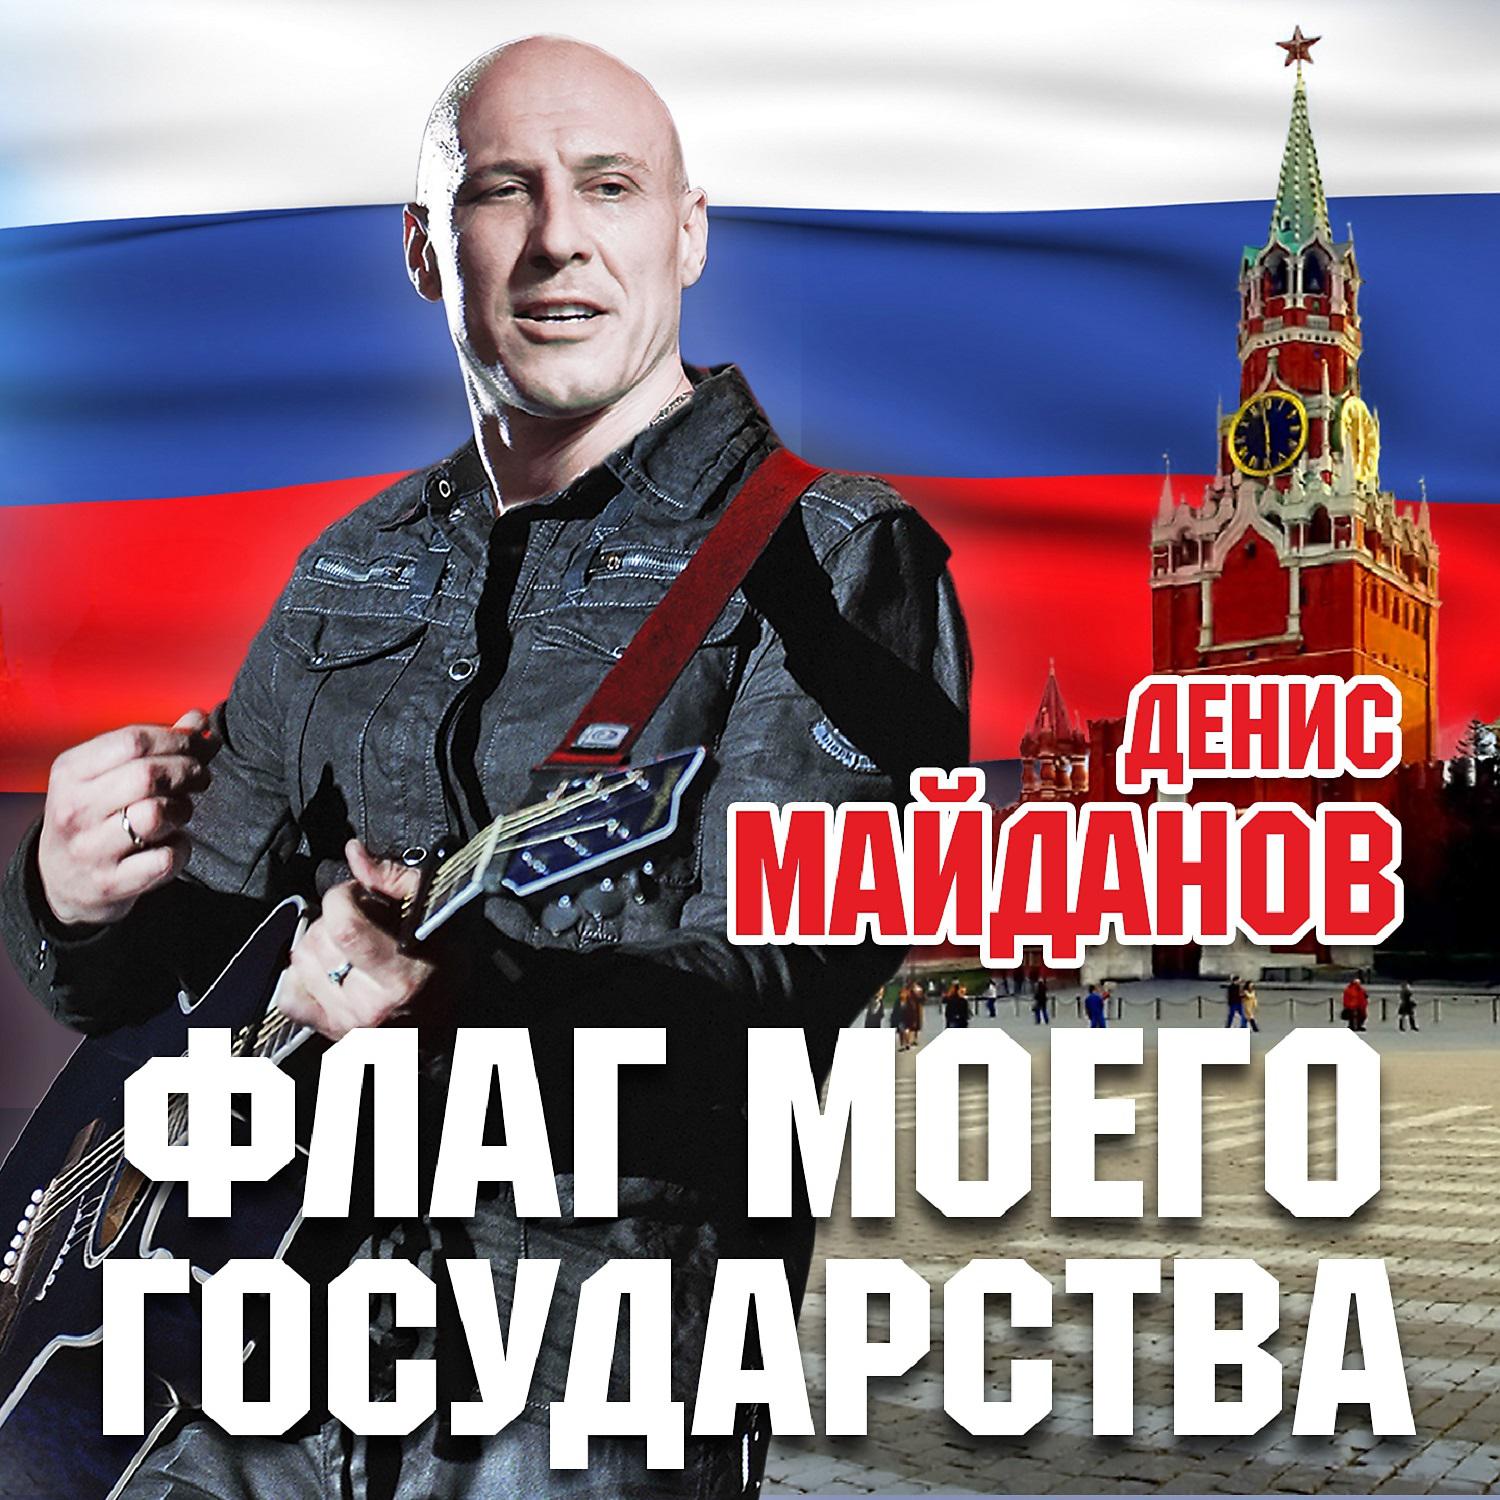 Минус песни знамена. Майданов флаг моего государства 2015.